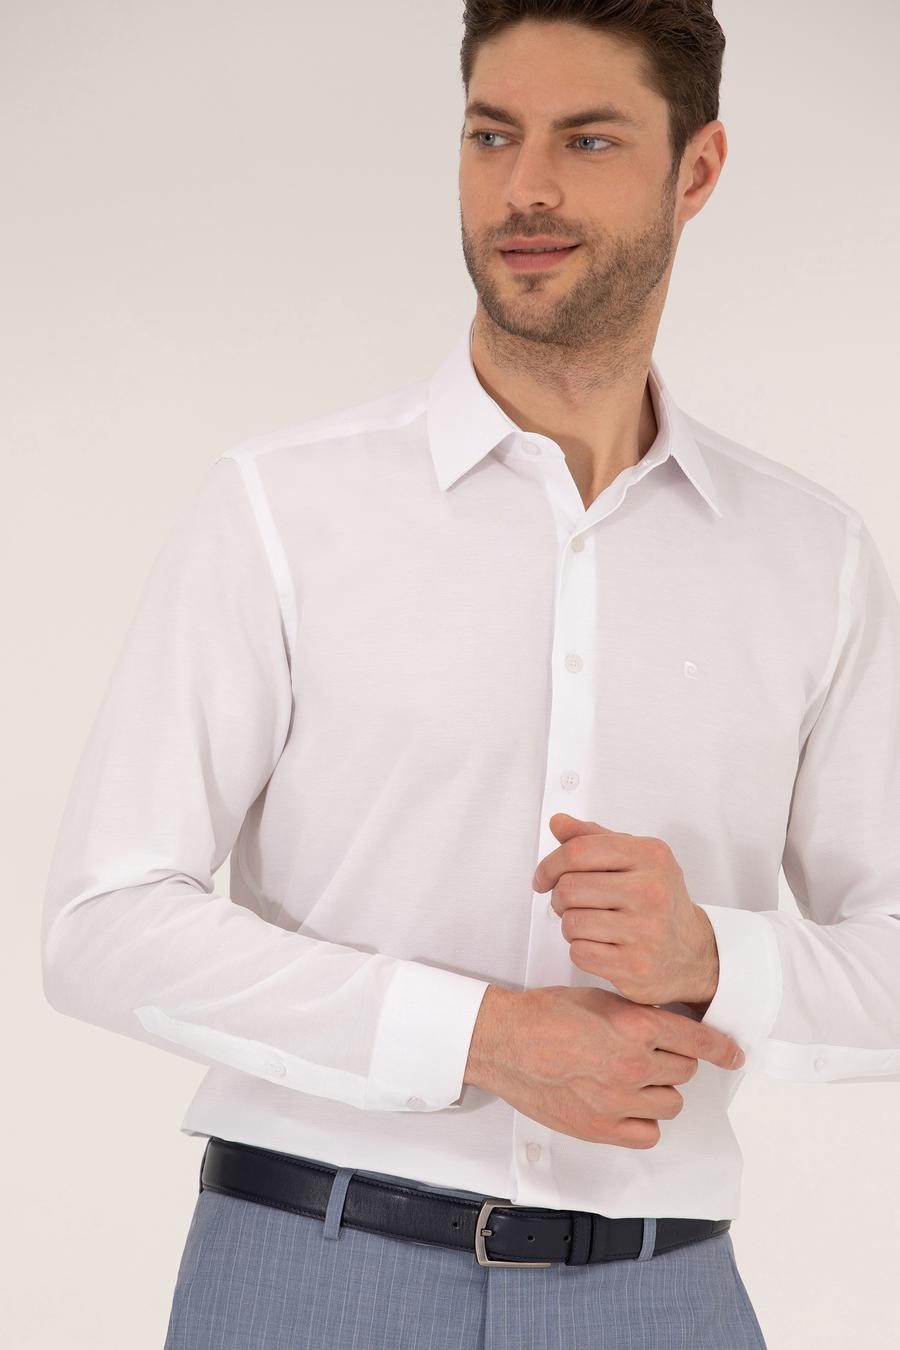 پیراهن یقه کلاسیک سفید  اندامی آستین بلند مردانه  پیرکاردین